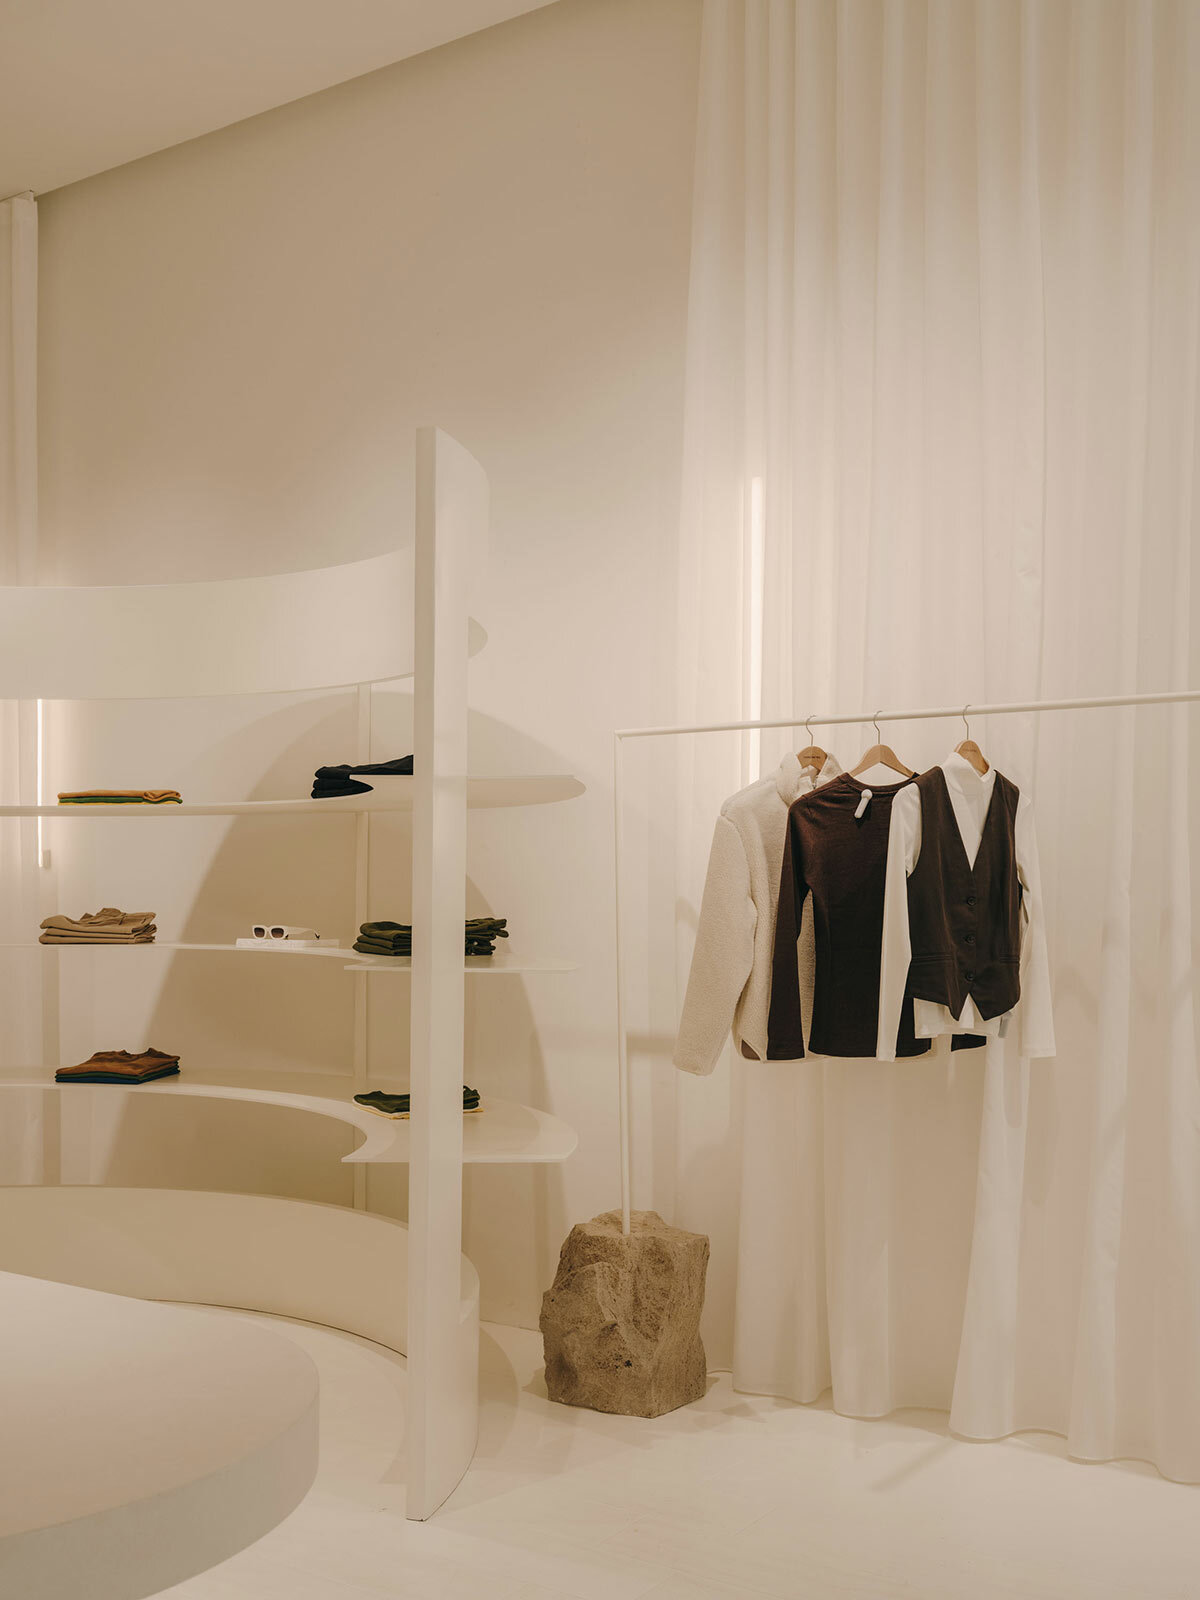 isern serra curates modular interiors for 'thinking mu' in barcelona